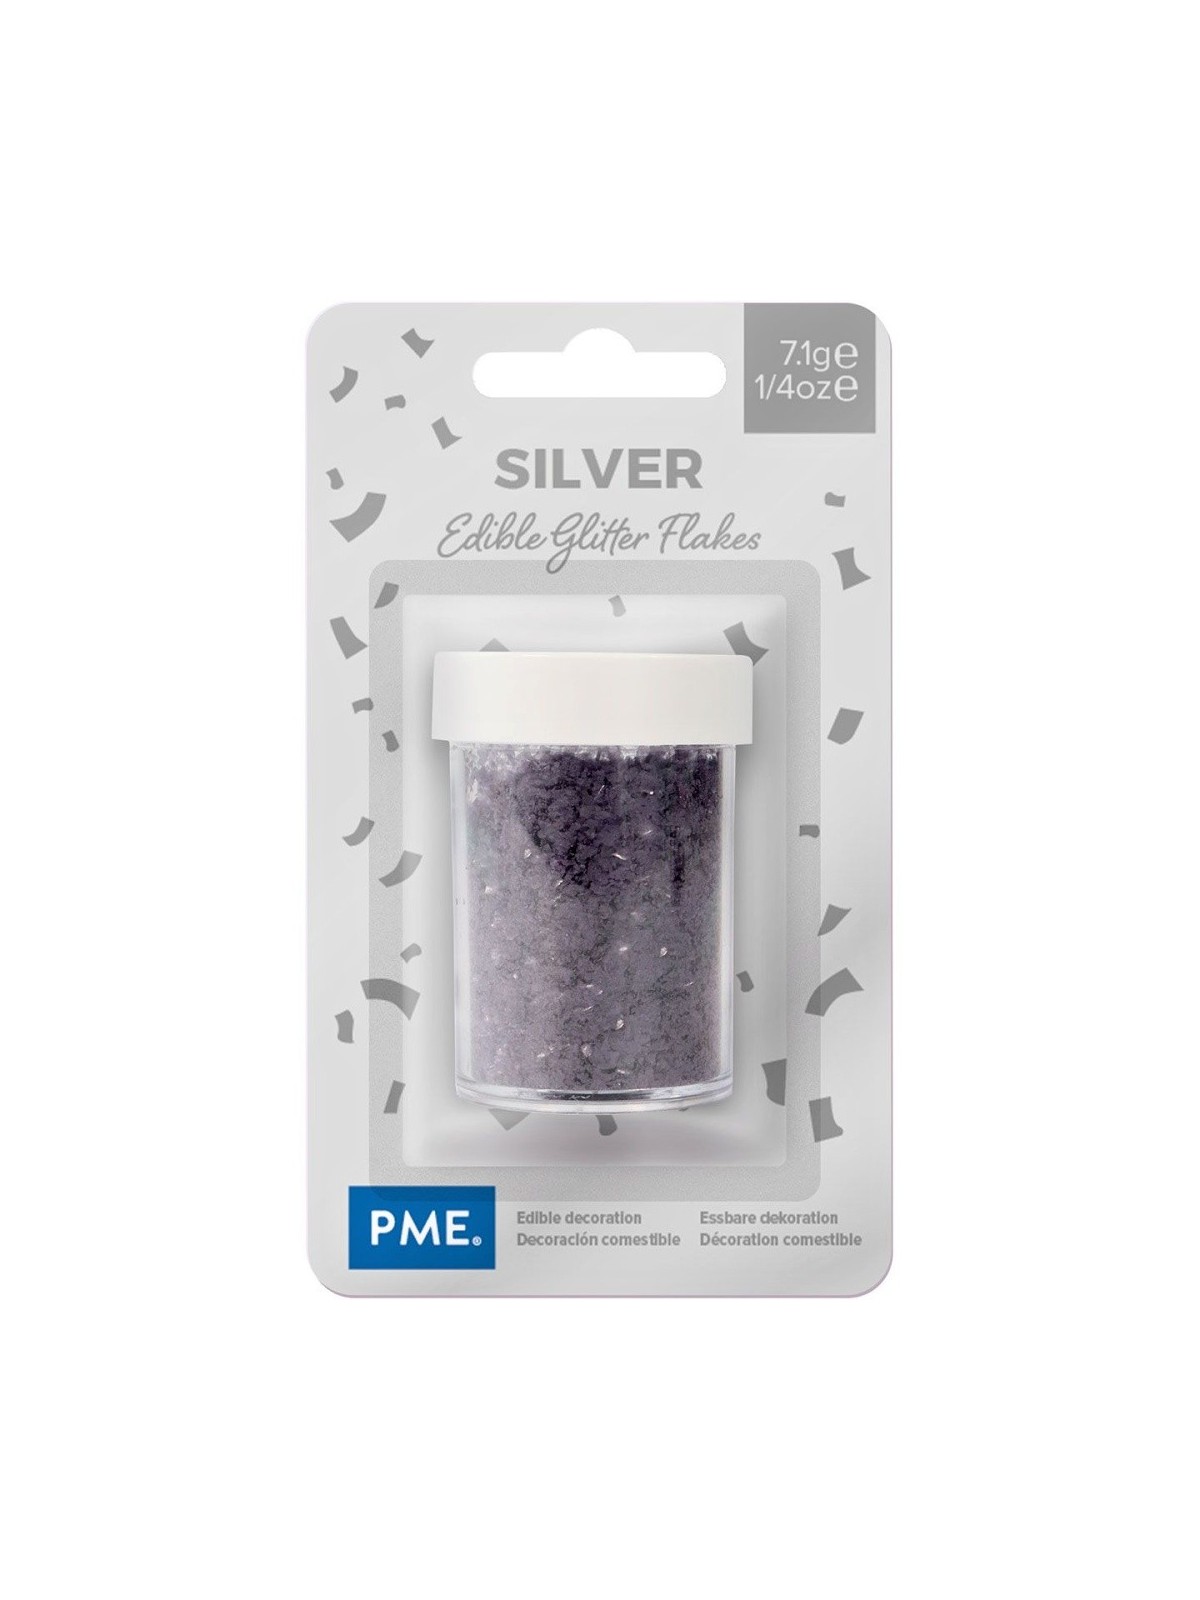 PME essbare Glitter Flakes - Silver 7,1g